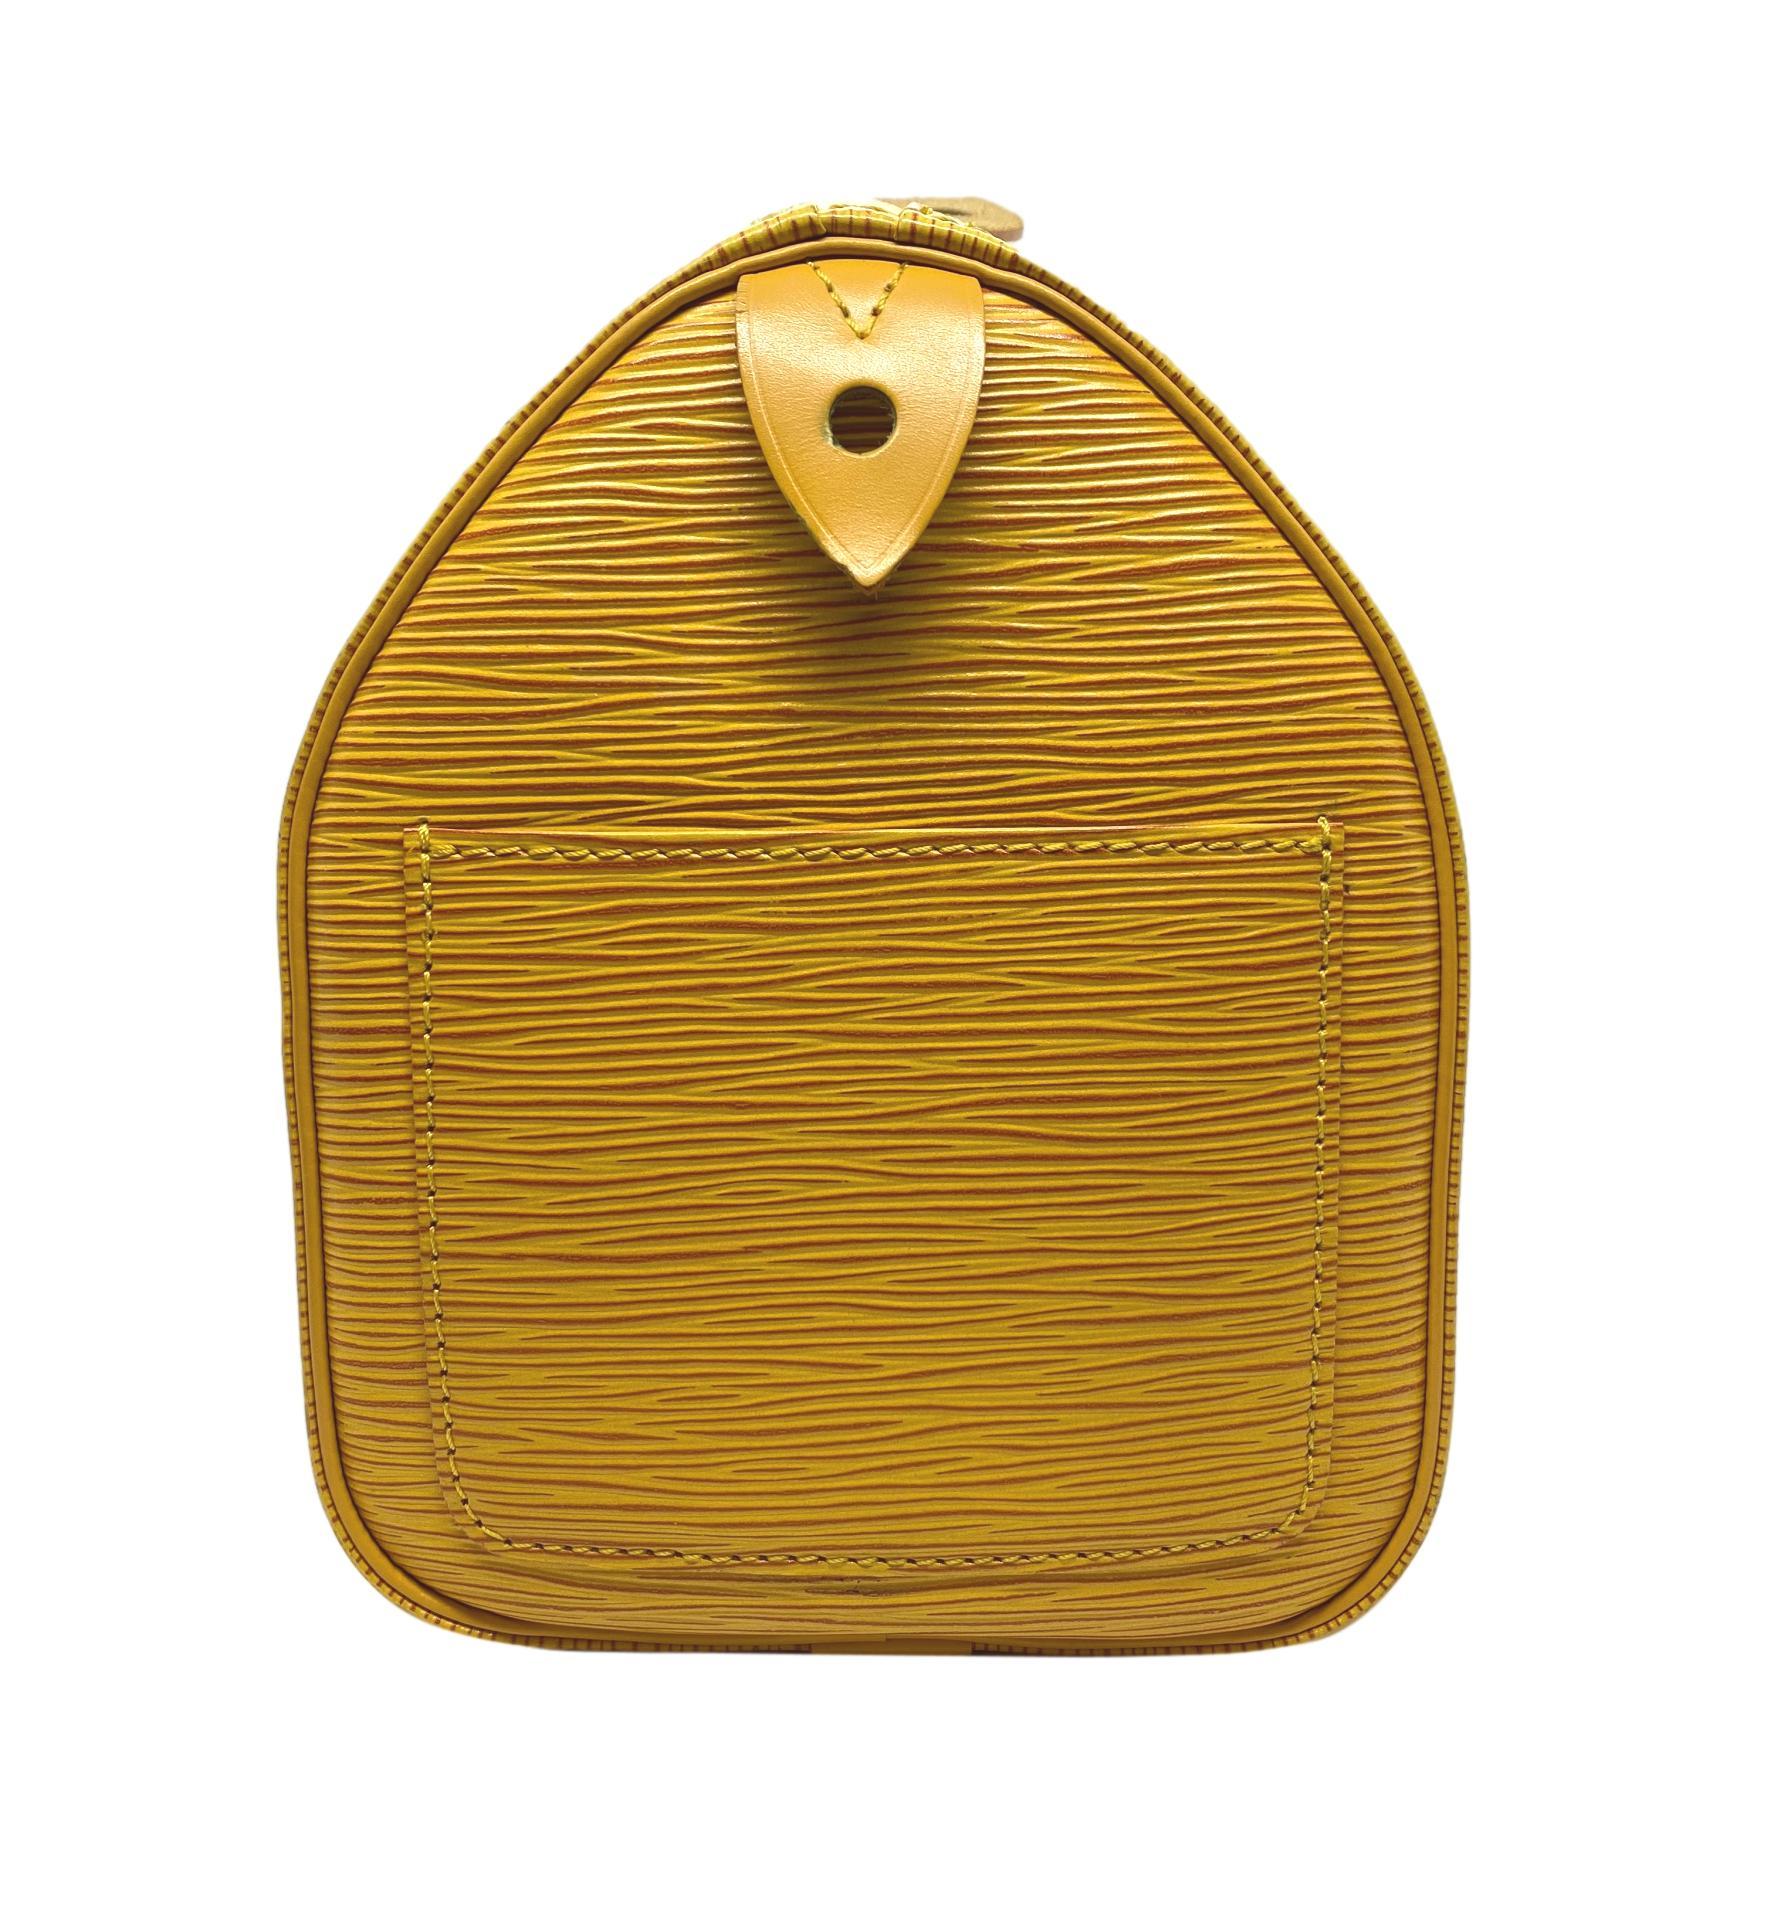 Louis Vuitton Speedy 25 Yellow EPI Leather Handbag, France 1995. 2